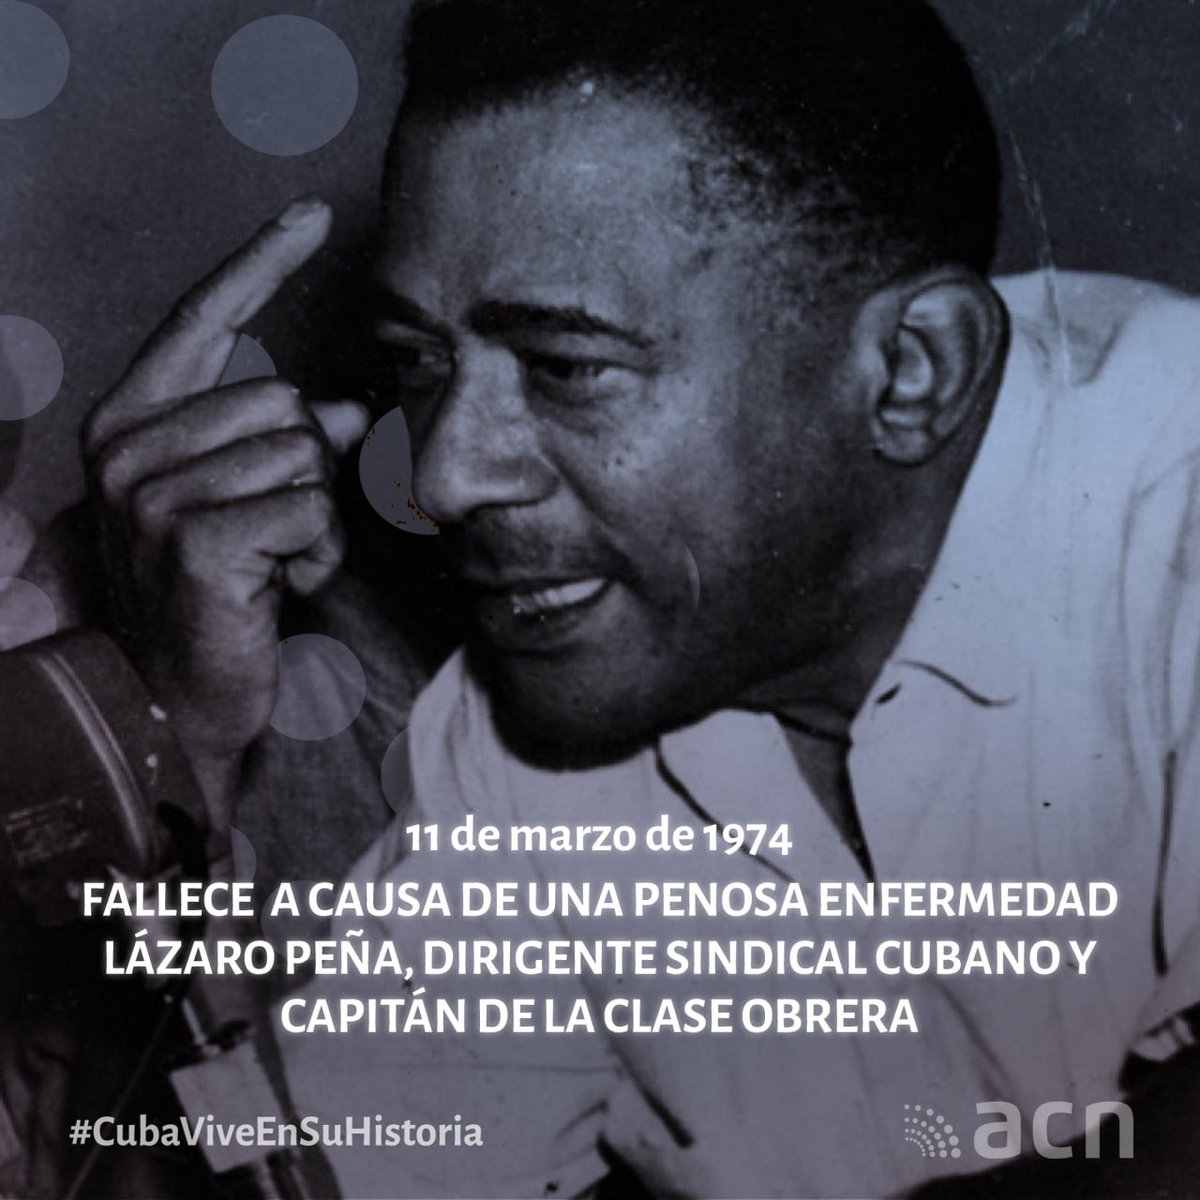 1974: Fallece el destacado líder sindical Lázaro Peña González, llamado  el Capitán de la clase Obrera cubana. Consagró su vida a la lucha por  los derechos sindicales de los trabajadores cubanos durante la  república neocolonial y luego del triunfo de la Revolución. #CTC #Cuba